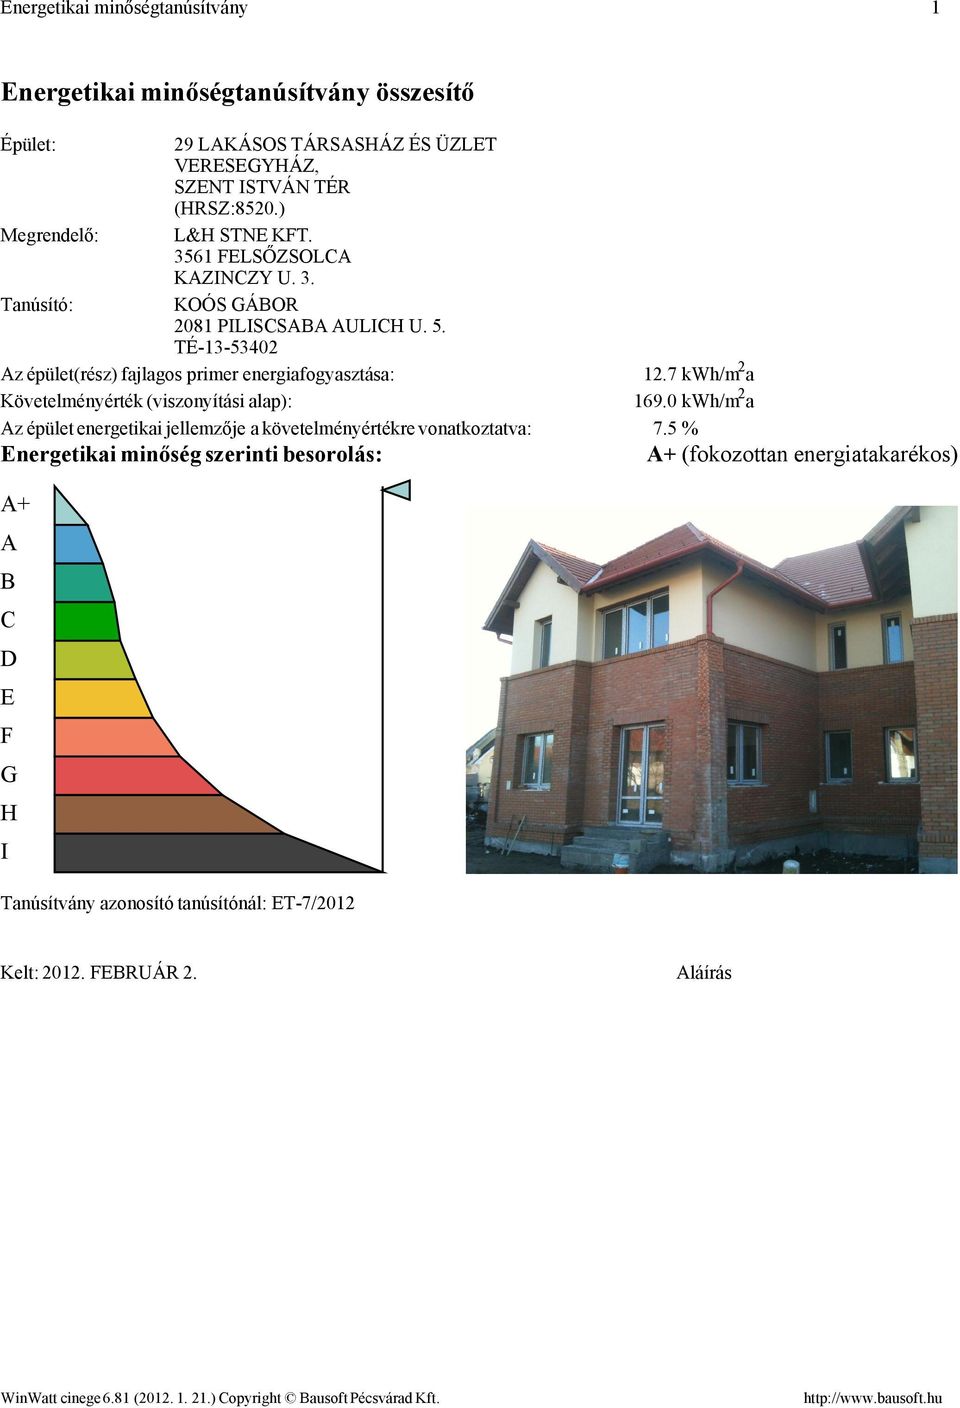 TÉ-13-53402 Az épület(rész) fajlagos primer energiafogyasztása: Követelményérték (viszonyítási alap): Az épület energetikai jellemzője a követelményértékre